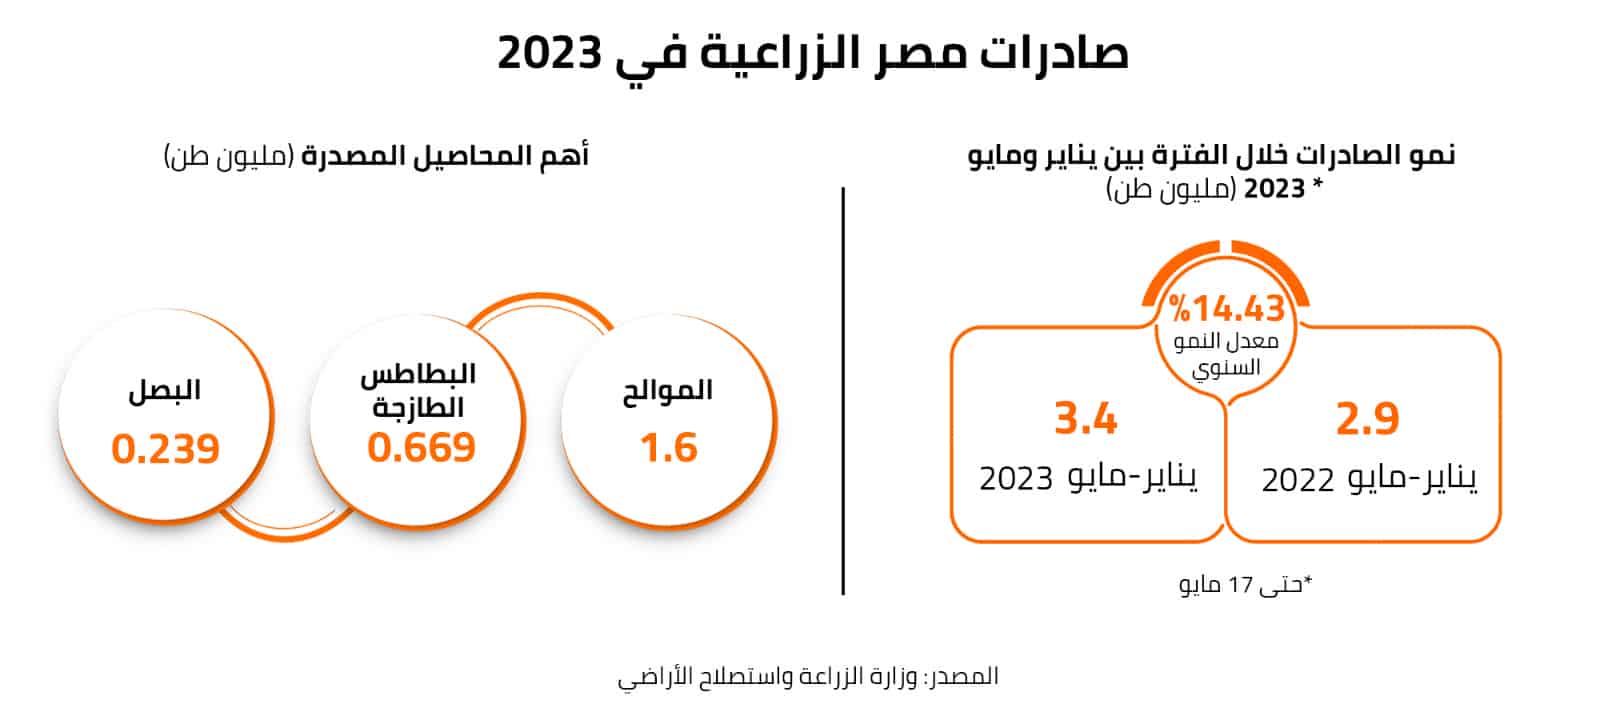 صادرات مصر الزراعية في 2023 